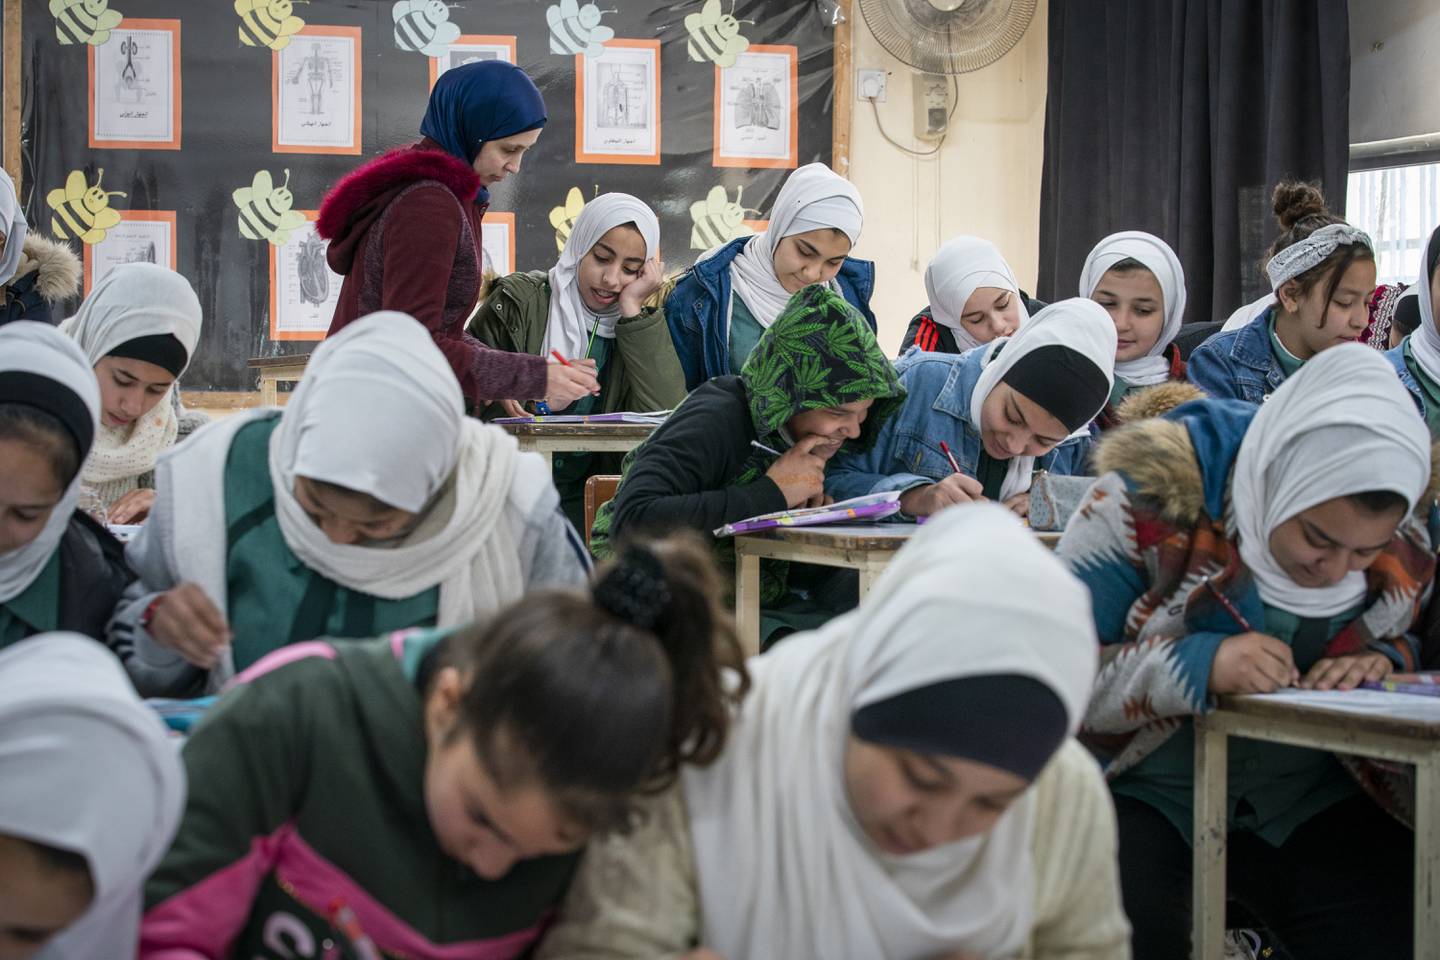 FNs hjelpeorganisasjon for palestinske flyktninger (UNRWA) driver over 700 skoler og gir skolebarn til 545.000 palestinske flyktningbarn, som her i Jordans hovedstad Amman. Foto: Heiko Junge / NTB